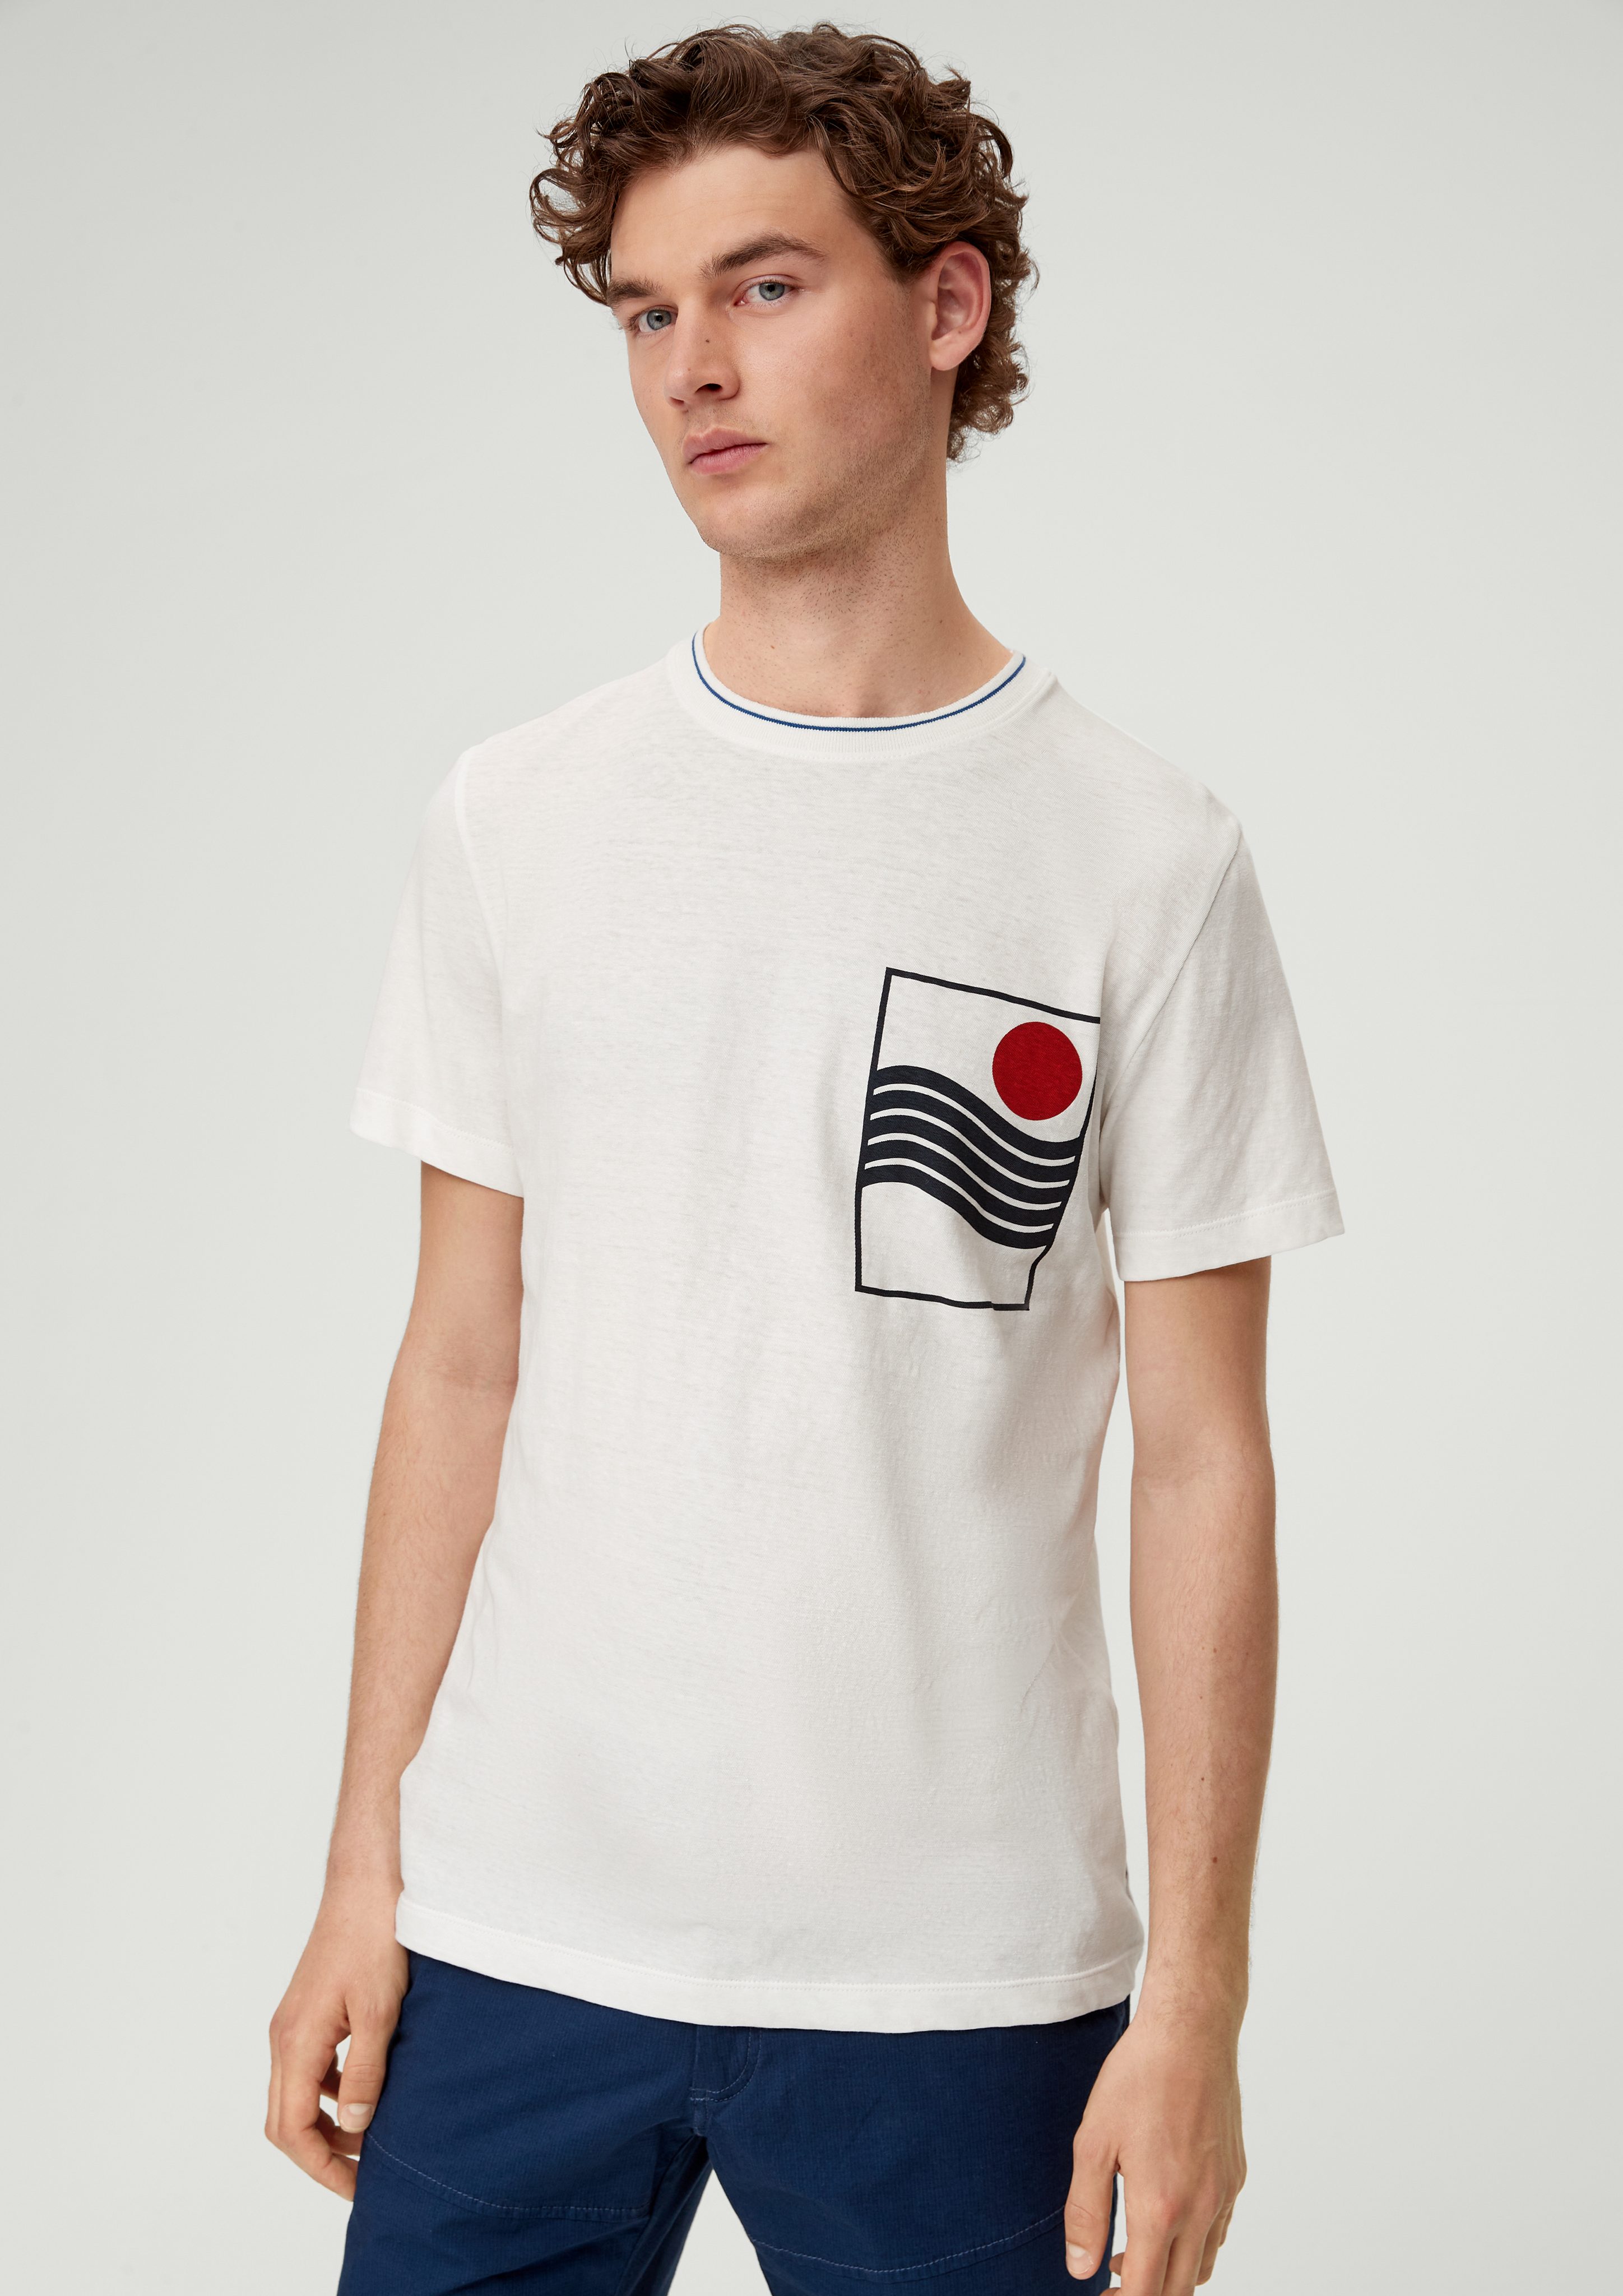 s.Oliver Kurzarmshirt T-Shirt aus Leinenmix Artwork weiß | T-Shirts